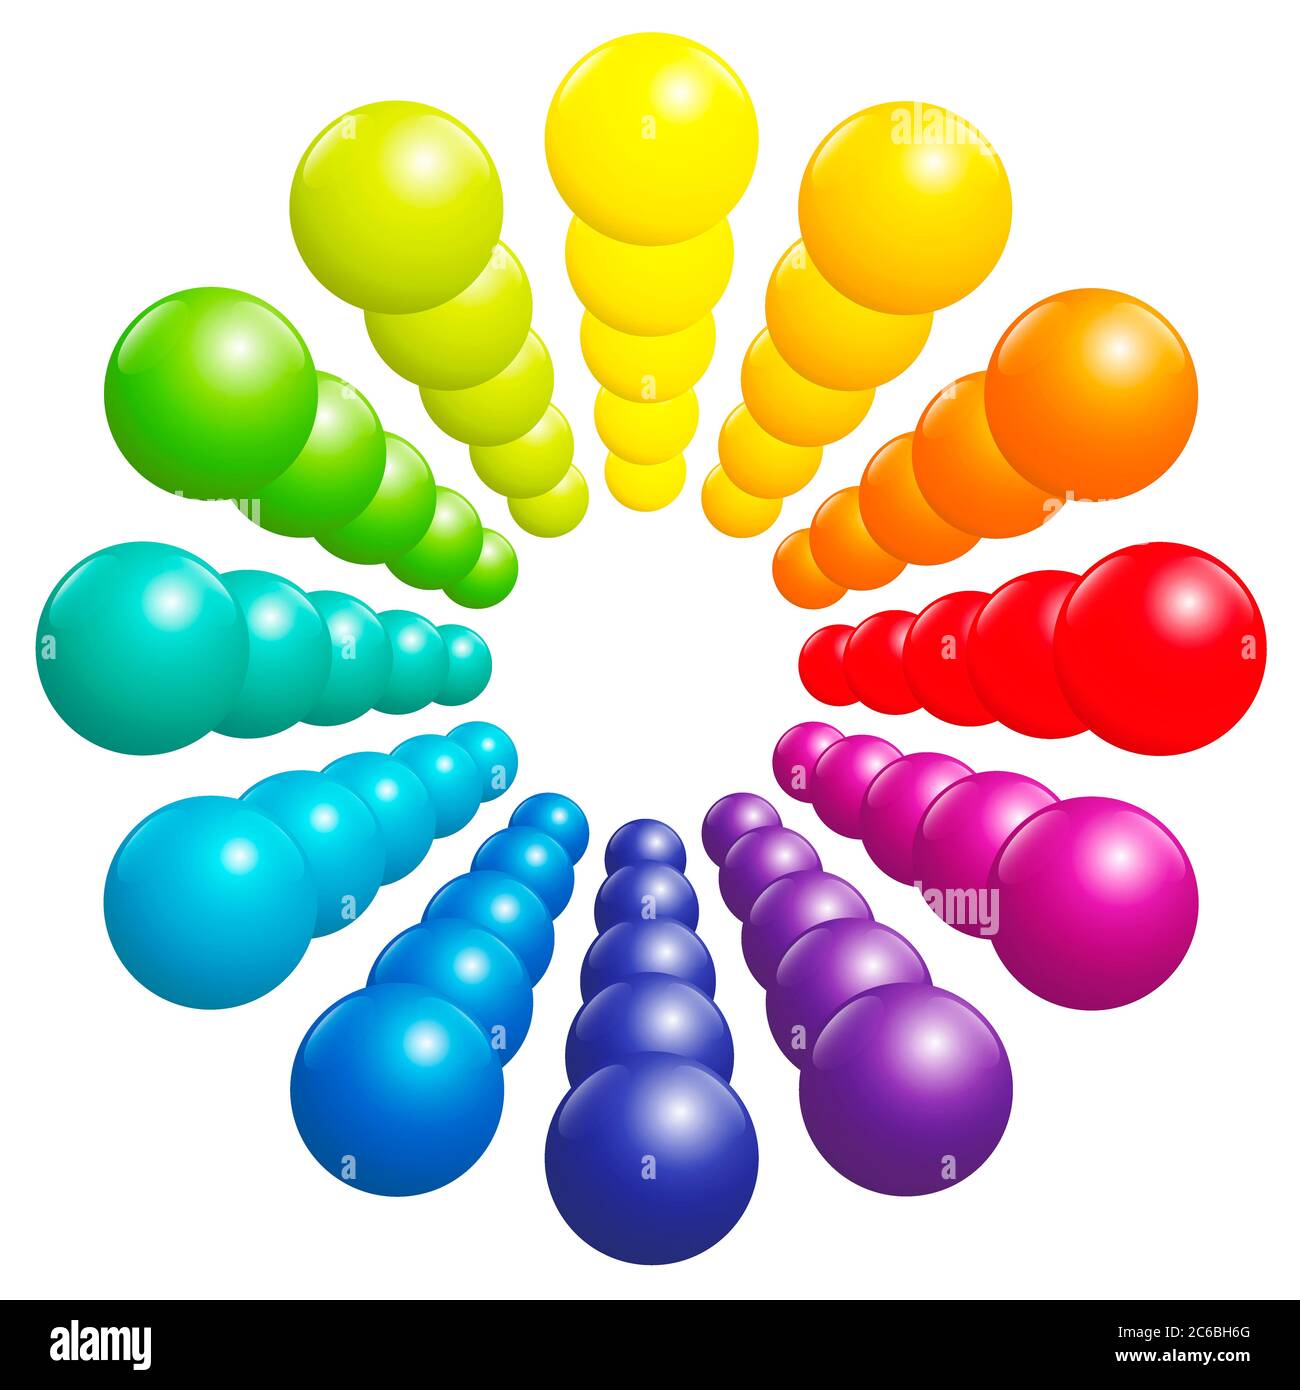 Motif de boule coloré : cercle, tube, tour ou fleur. Spectre arc-en-ciel très brillant formé par de nombreuses boules de couleur tridimensionnelles. Banque D'Images